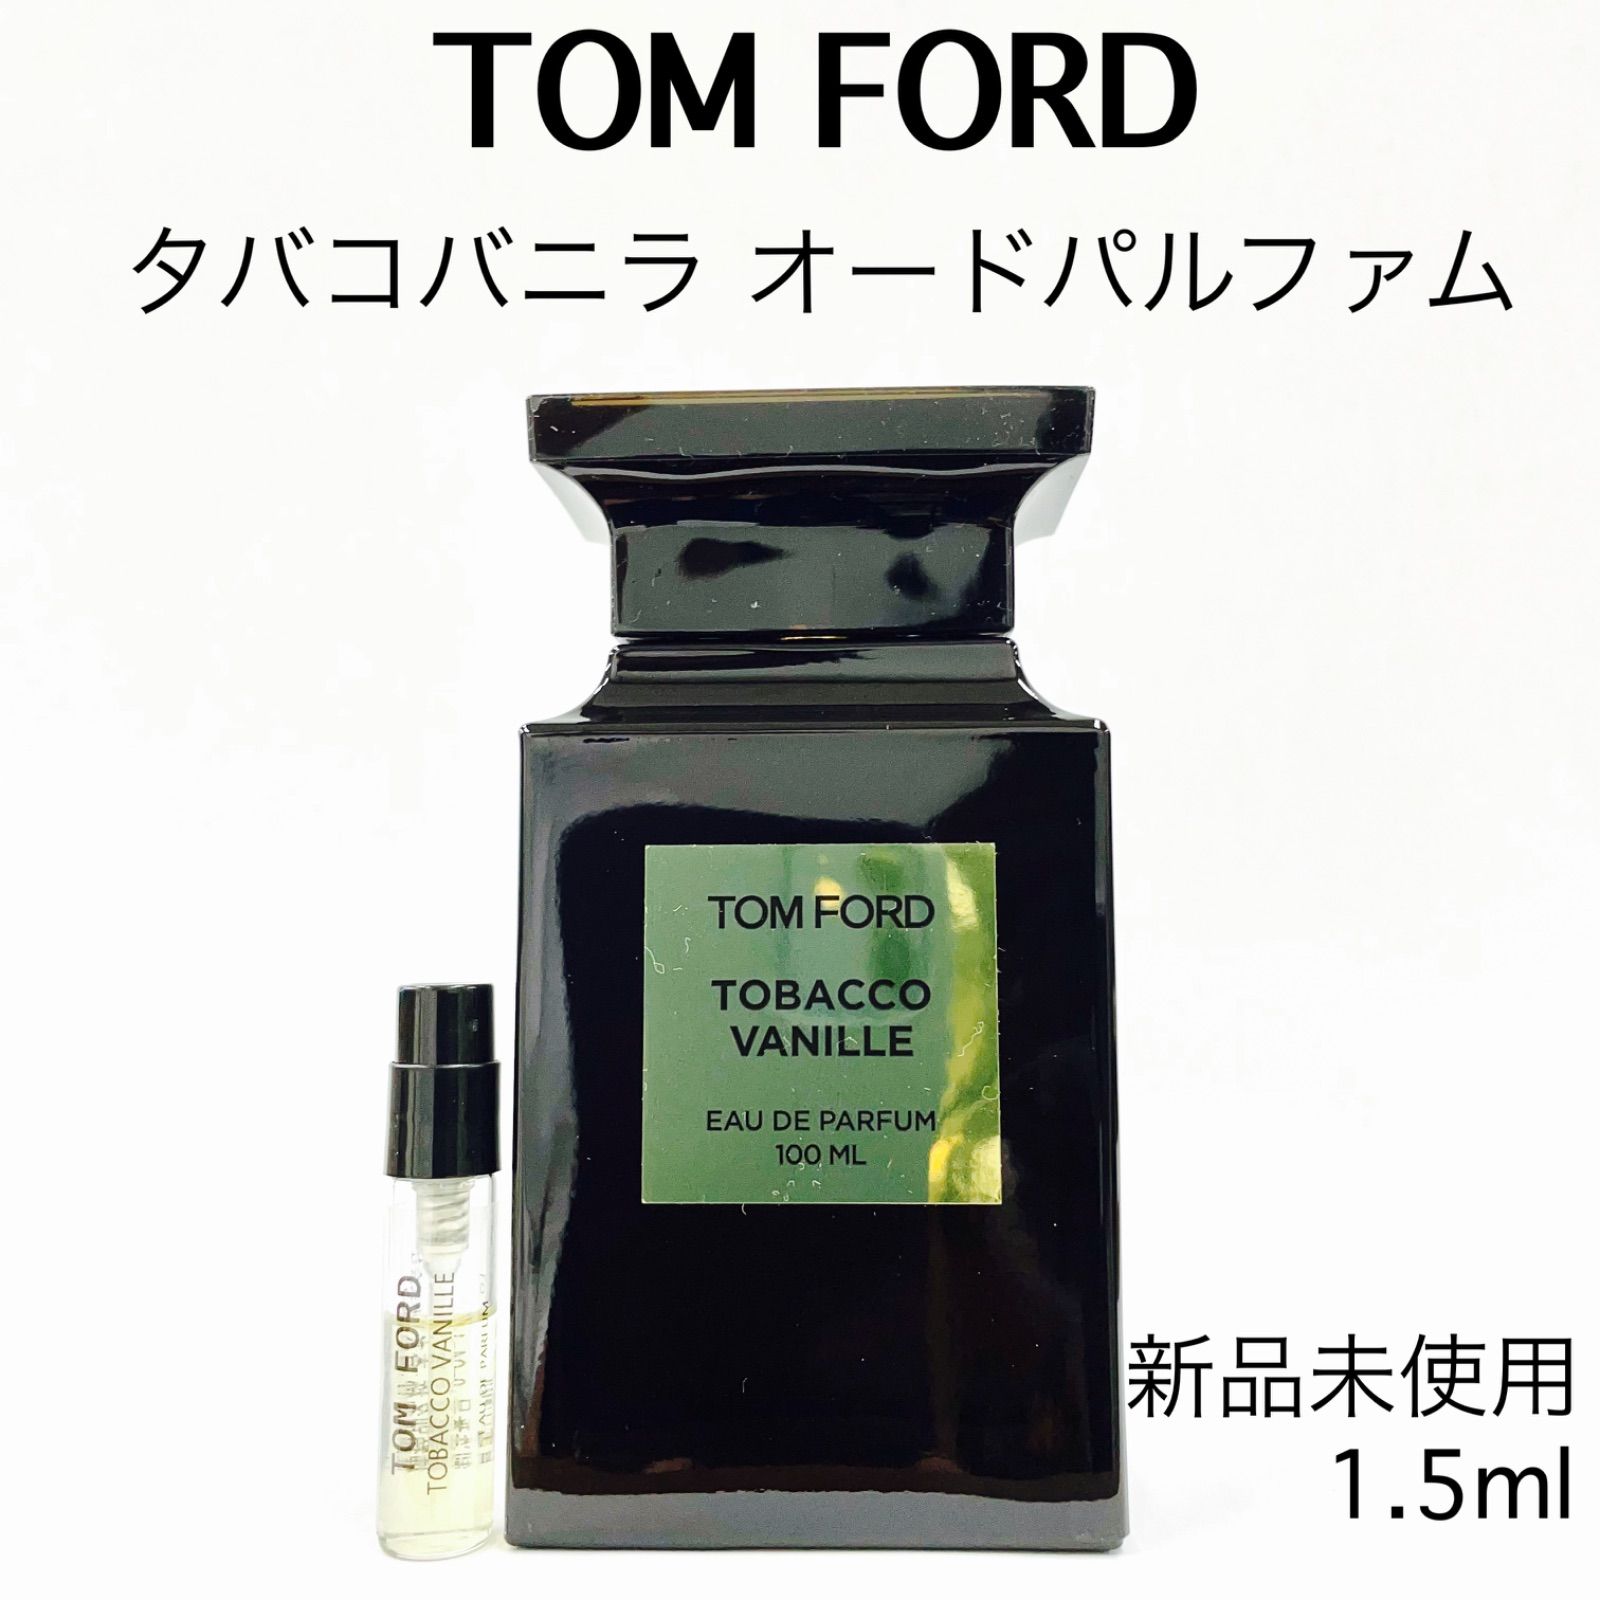 ☆日本の職人技☆ トムフォード TOM FORD タバコバニラ 10ml お試し